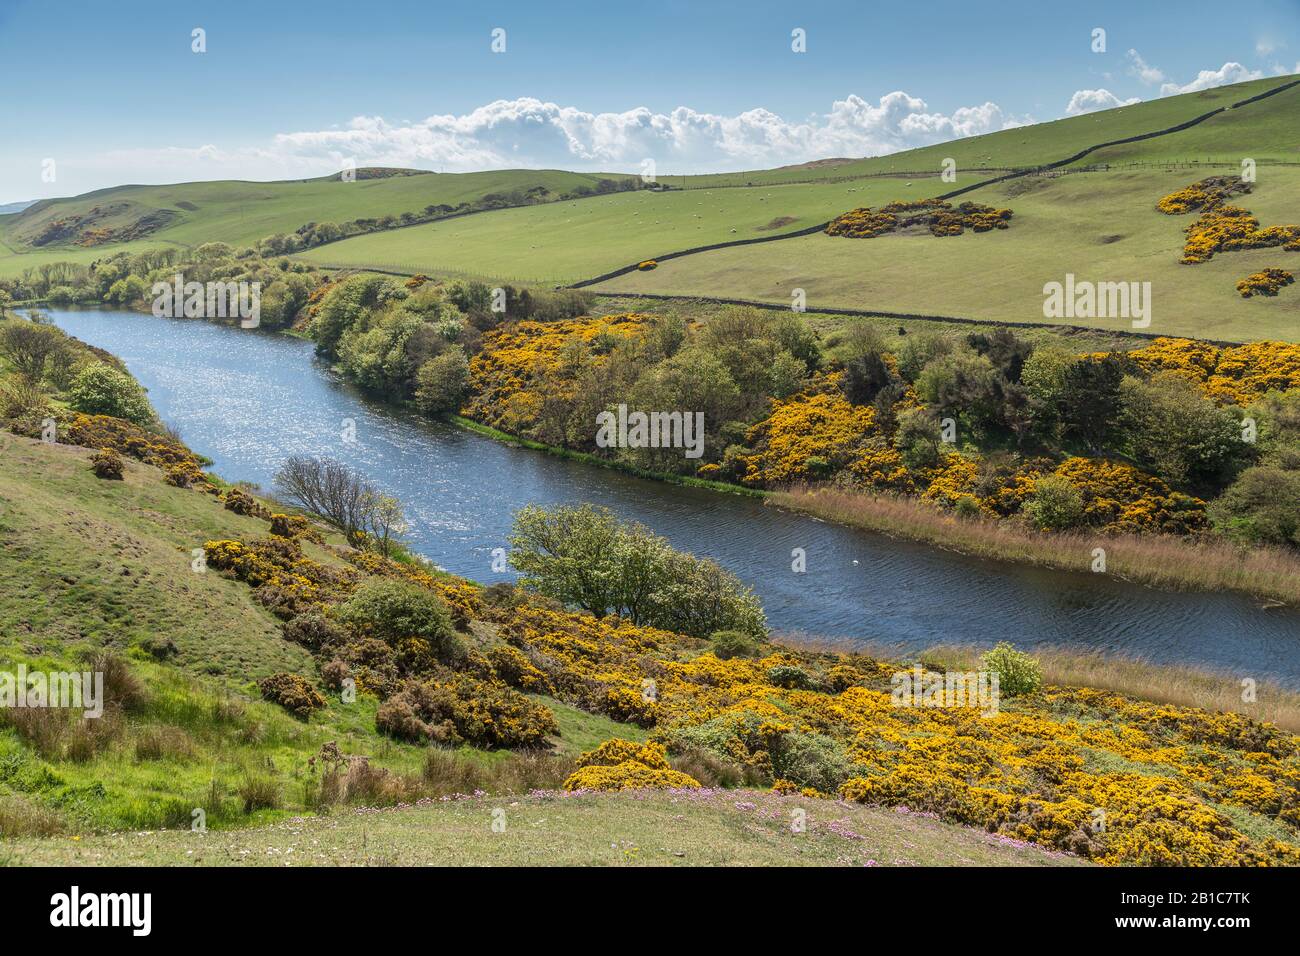 Il lago di St Abbs, situato nel Berwickshire, in Scozia, è una parte importante Della Riserva naturale nazionale di St. Abbs Head, che ospita uccelli d'acqua dolce Foto Stock